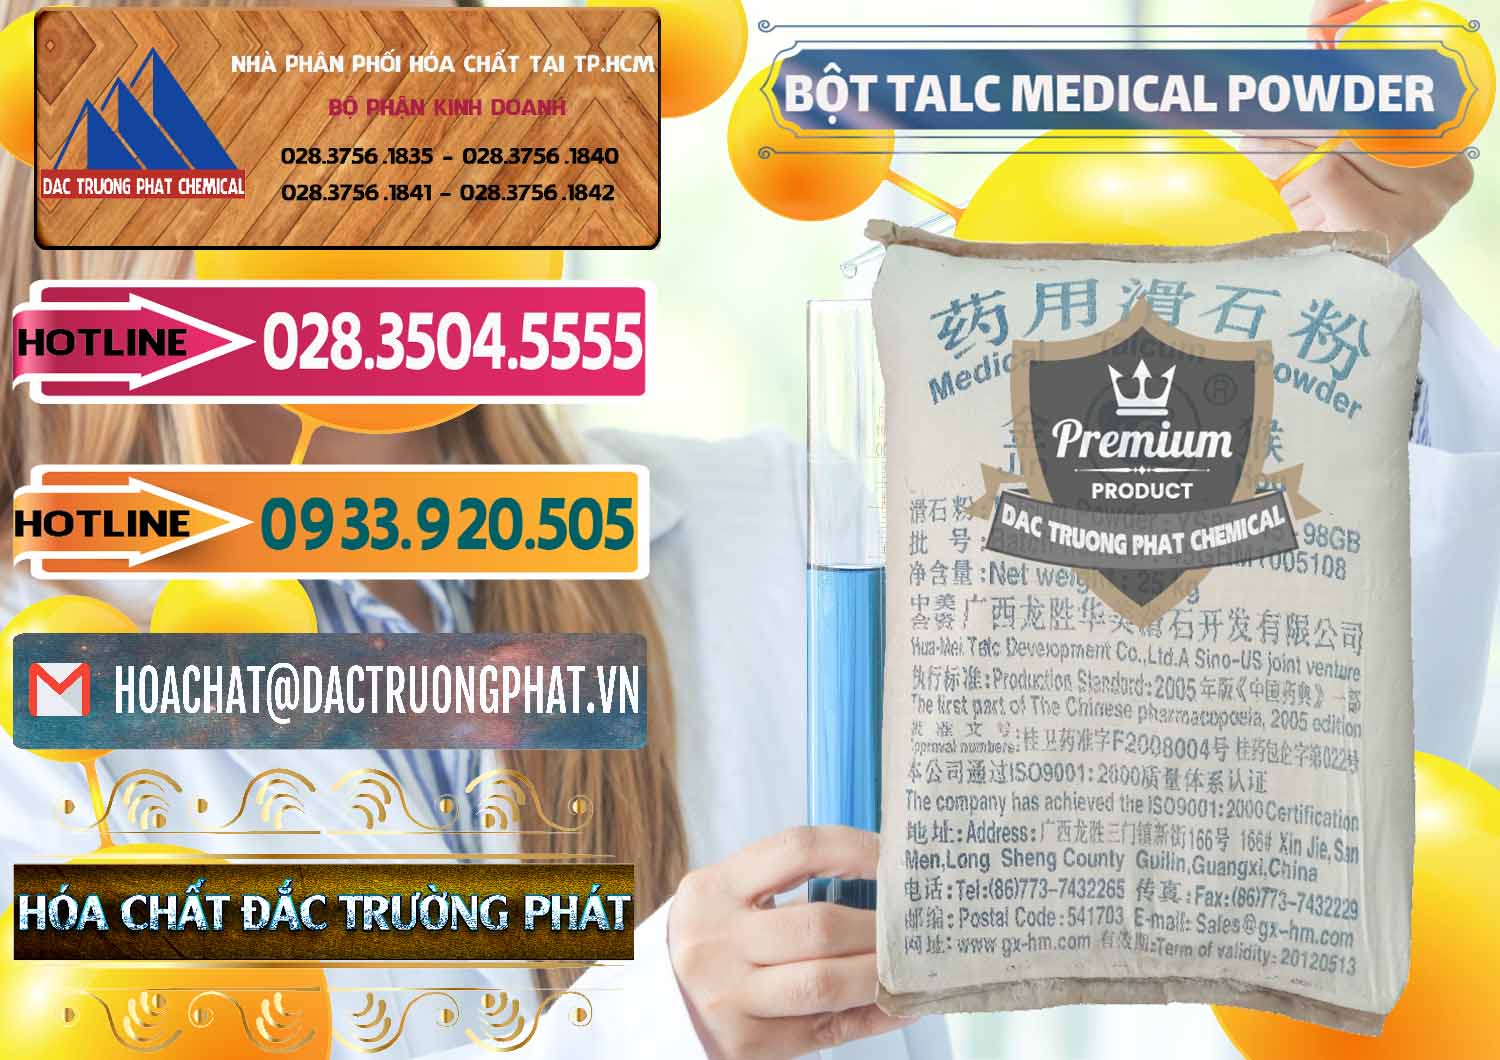 Chuyên bán _ cung ứng Bột Talc Medical Powder Trung Quốc China - 0036 - Cty chuyên cung ứng - phân phối hóa chất tại TP.HCM - dactruongphat.vn